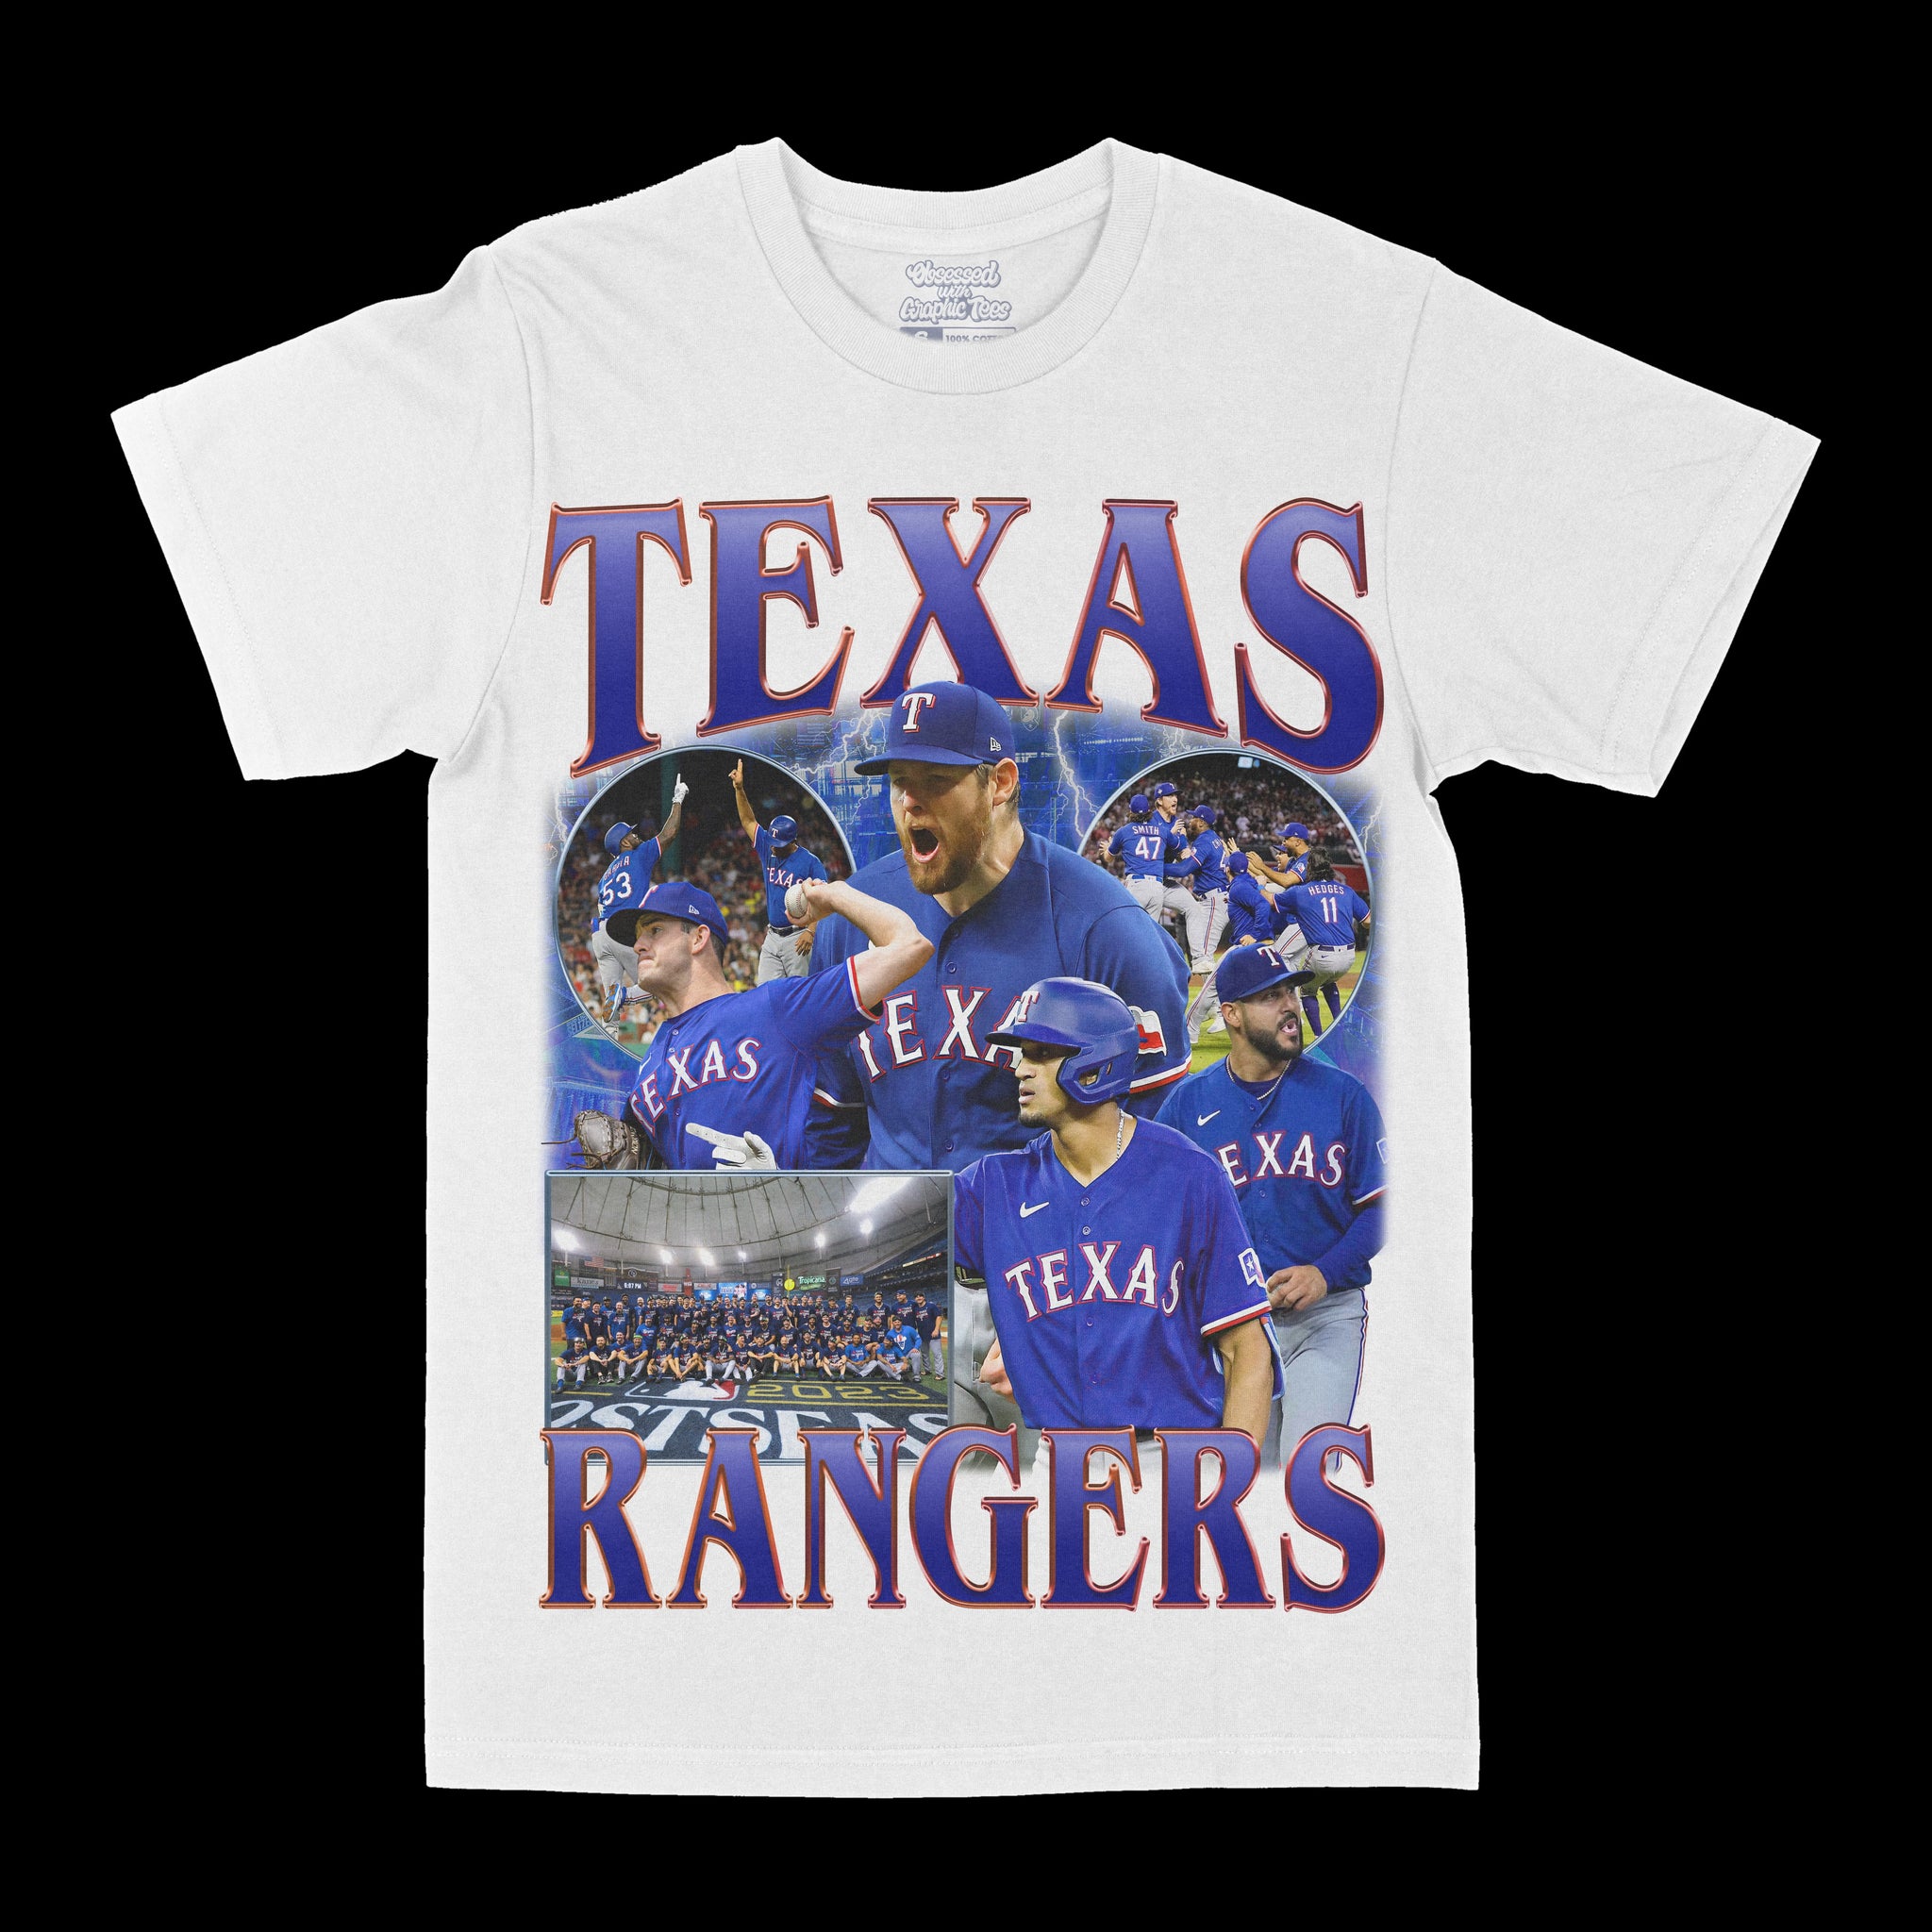 Texas Rangers Graphic Tee